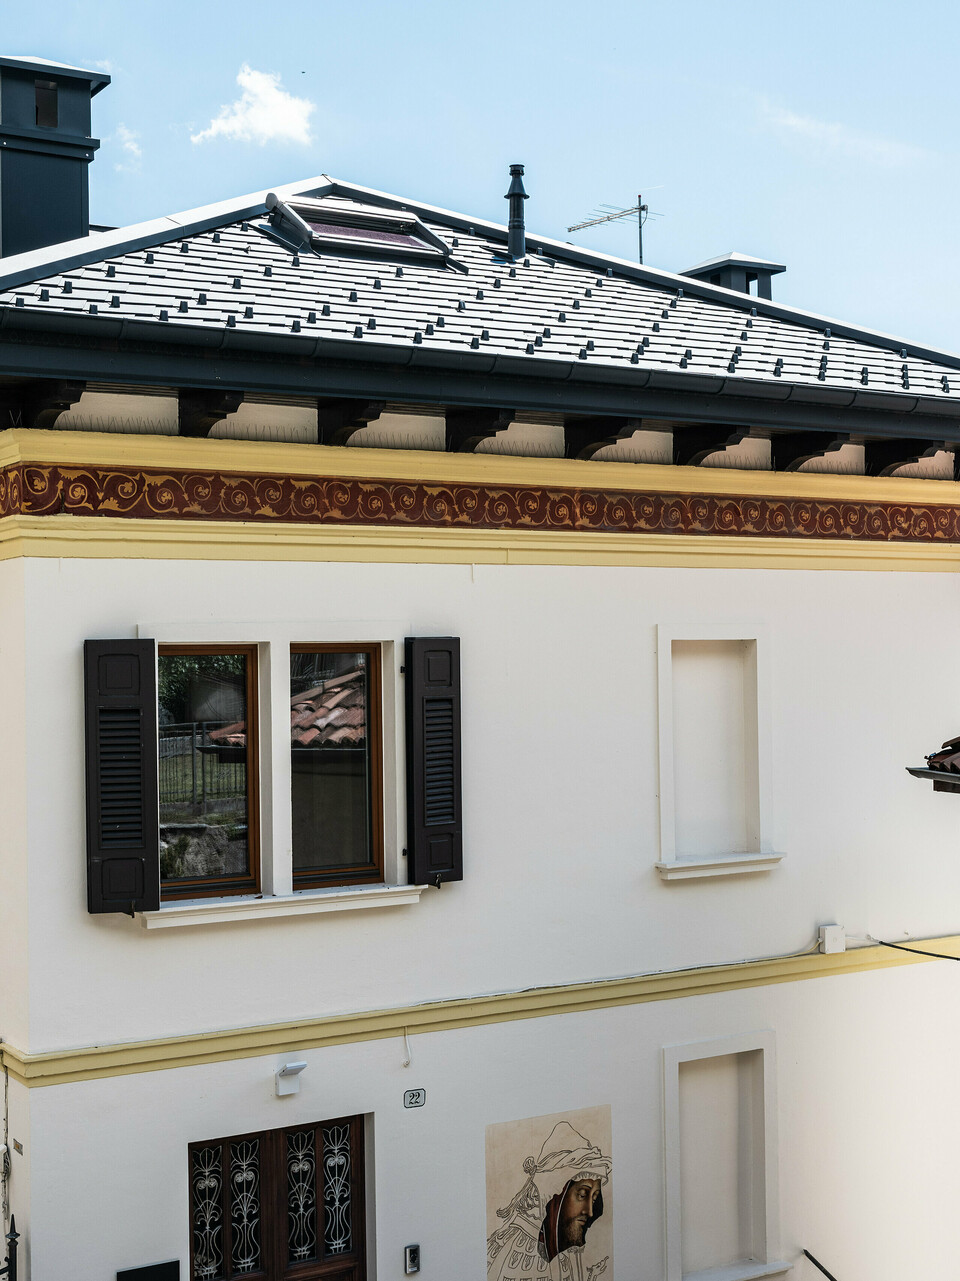 Restauriertes Gebäude in Belluno, gekennzeichnet durch ein PREFA Dach mit anthrazitfarbenen Aluminiumschindeln, die die strukturelle Integrität wahren. Die klassische Fassade mit dekorativen Frieselementen fügt sich nahtlos in die malerische italienische Landschaft ein und wird durch das moderne, langlebige und stilvolle PREFA Dachsystem in der Farbe P.10 Anthrazit abgerundet.